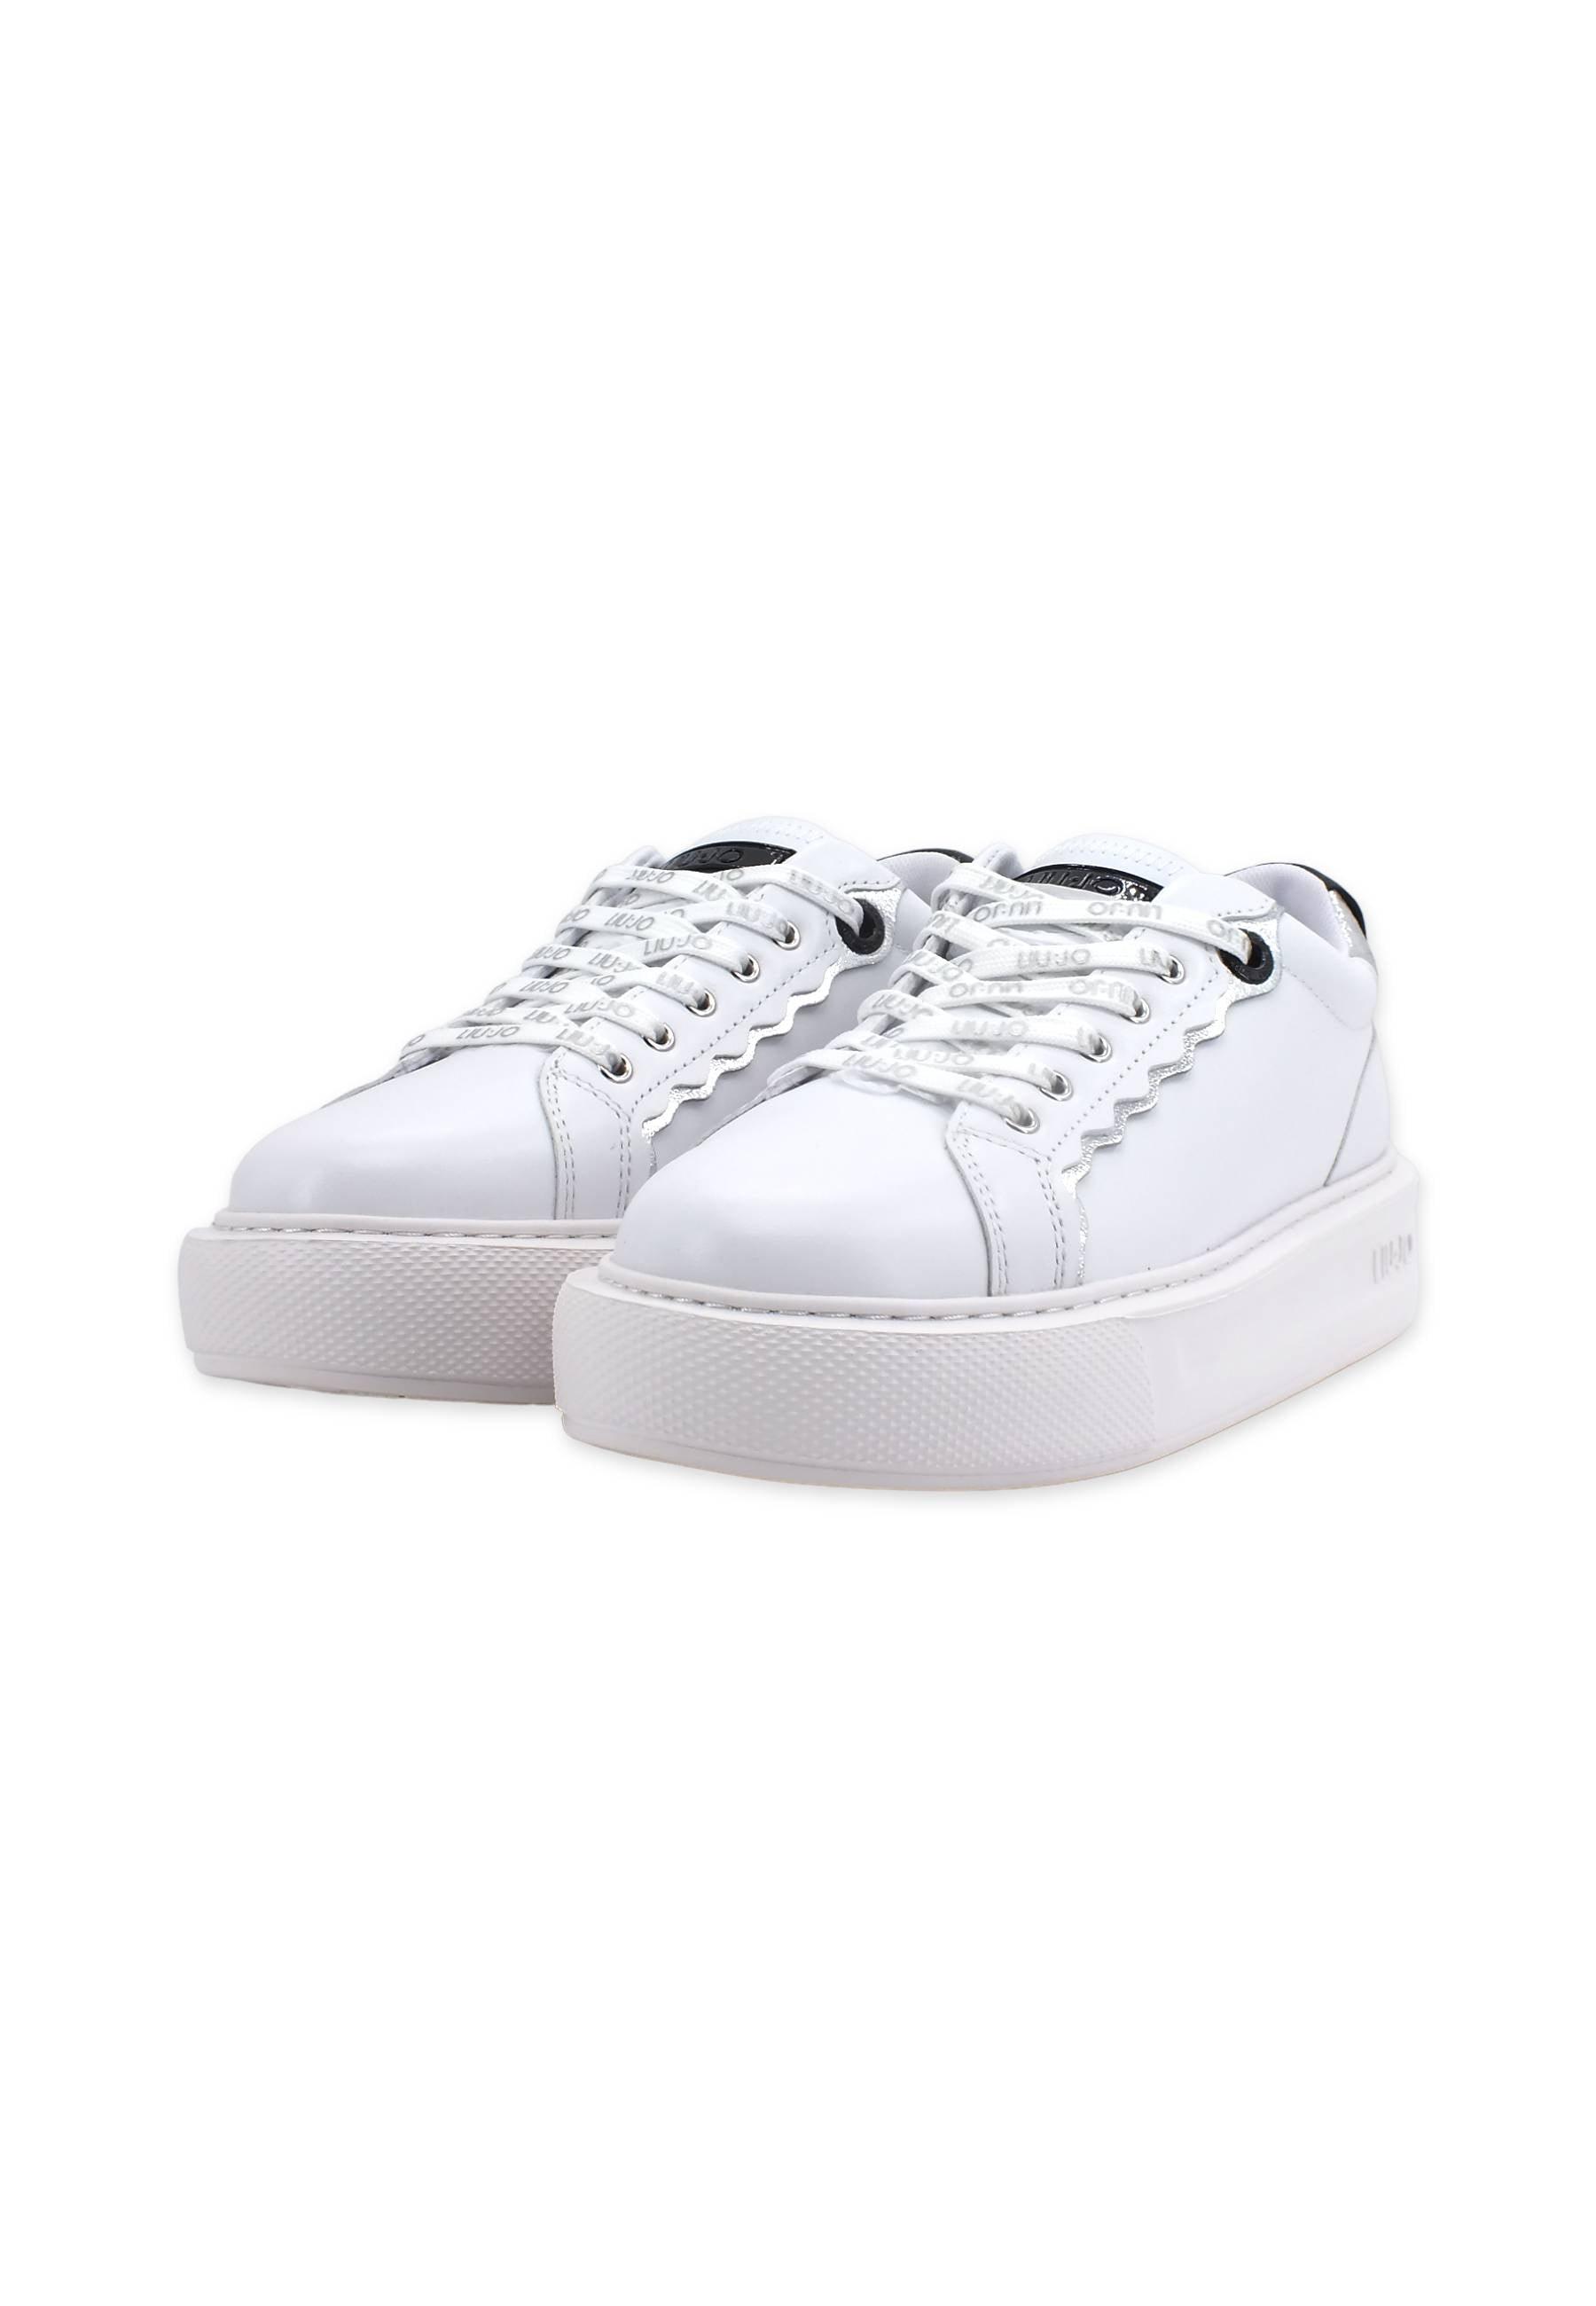 LIU JO Kylie 06 Sneaker Donna White BF2115P0102 - Sandrini Calzature e Abbigliamento